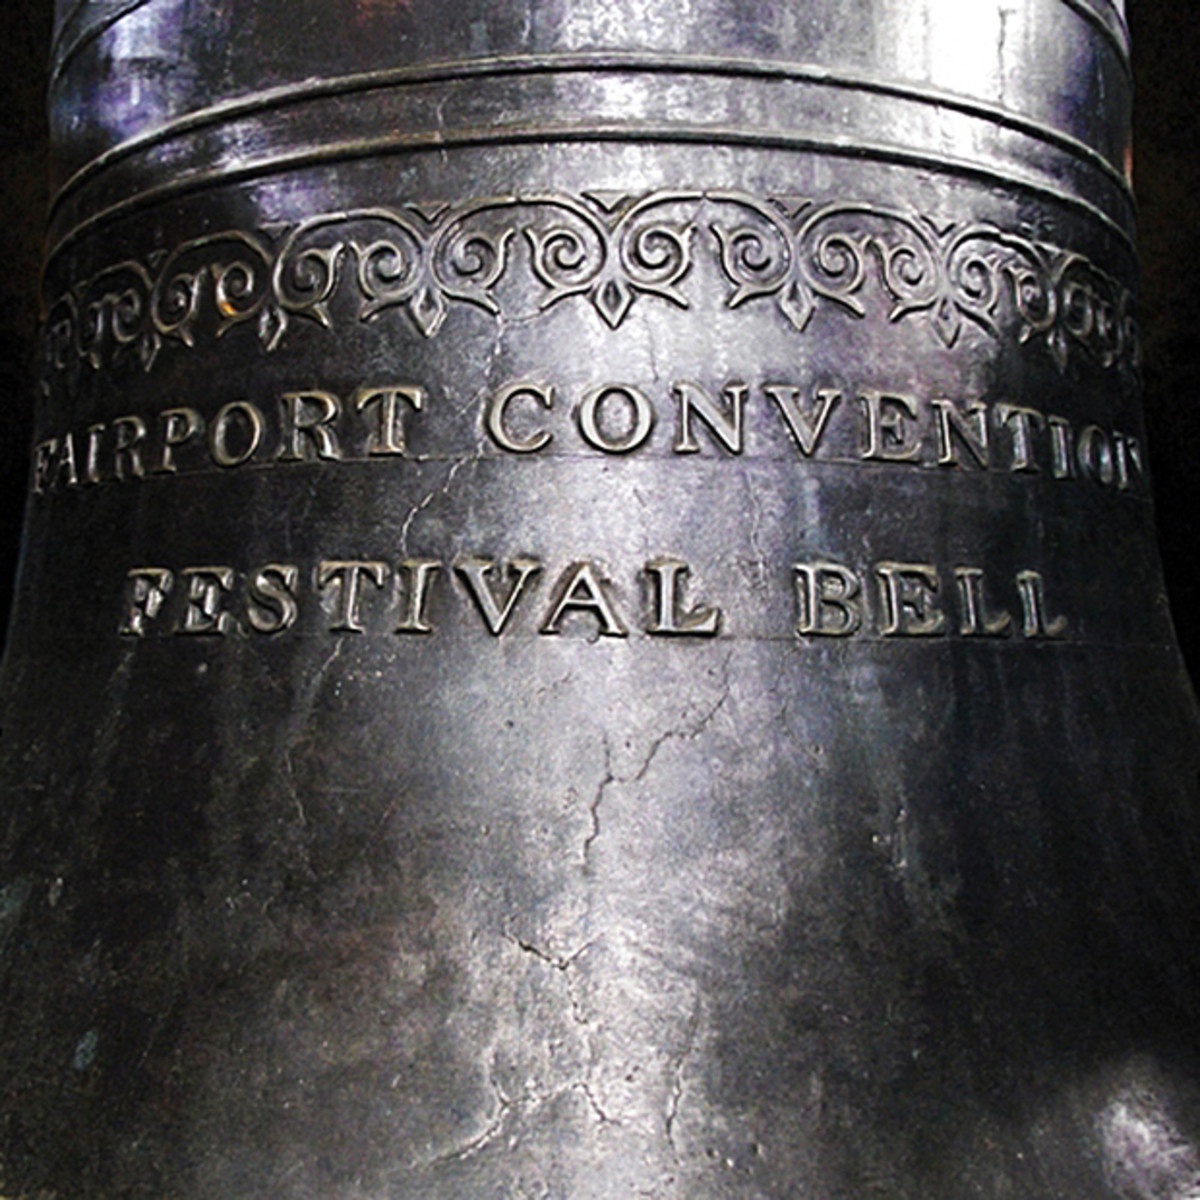 The Festival Bell